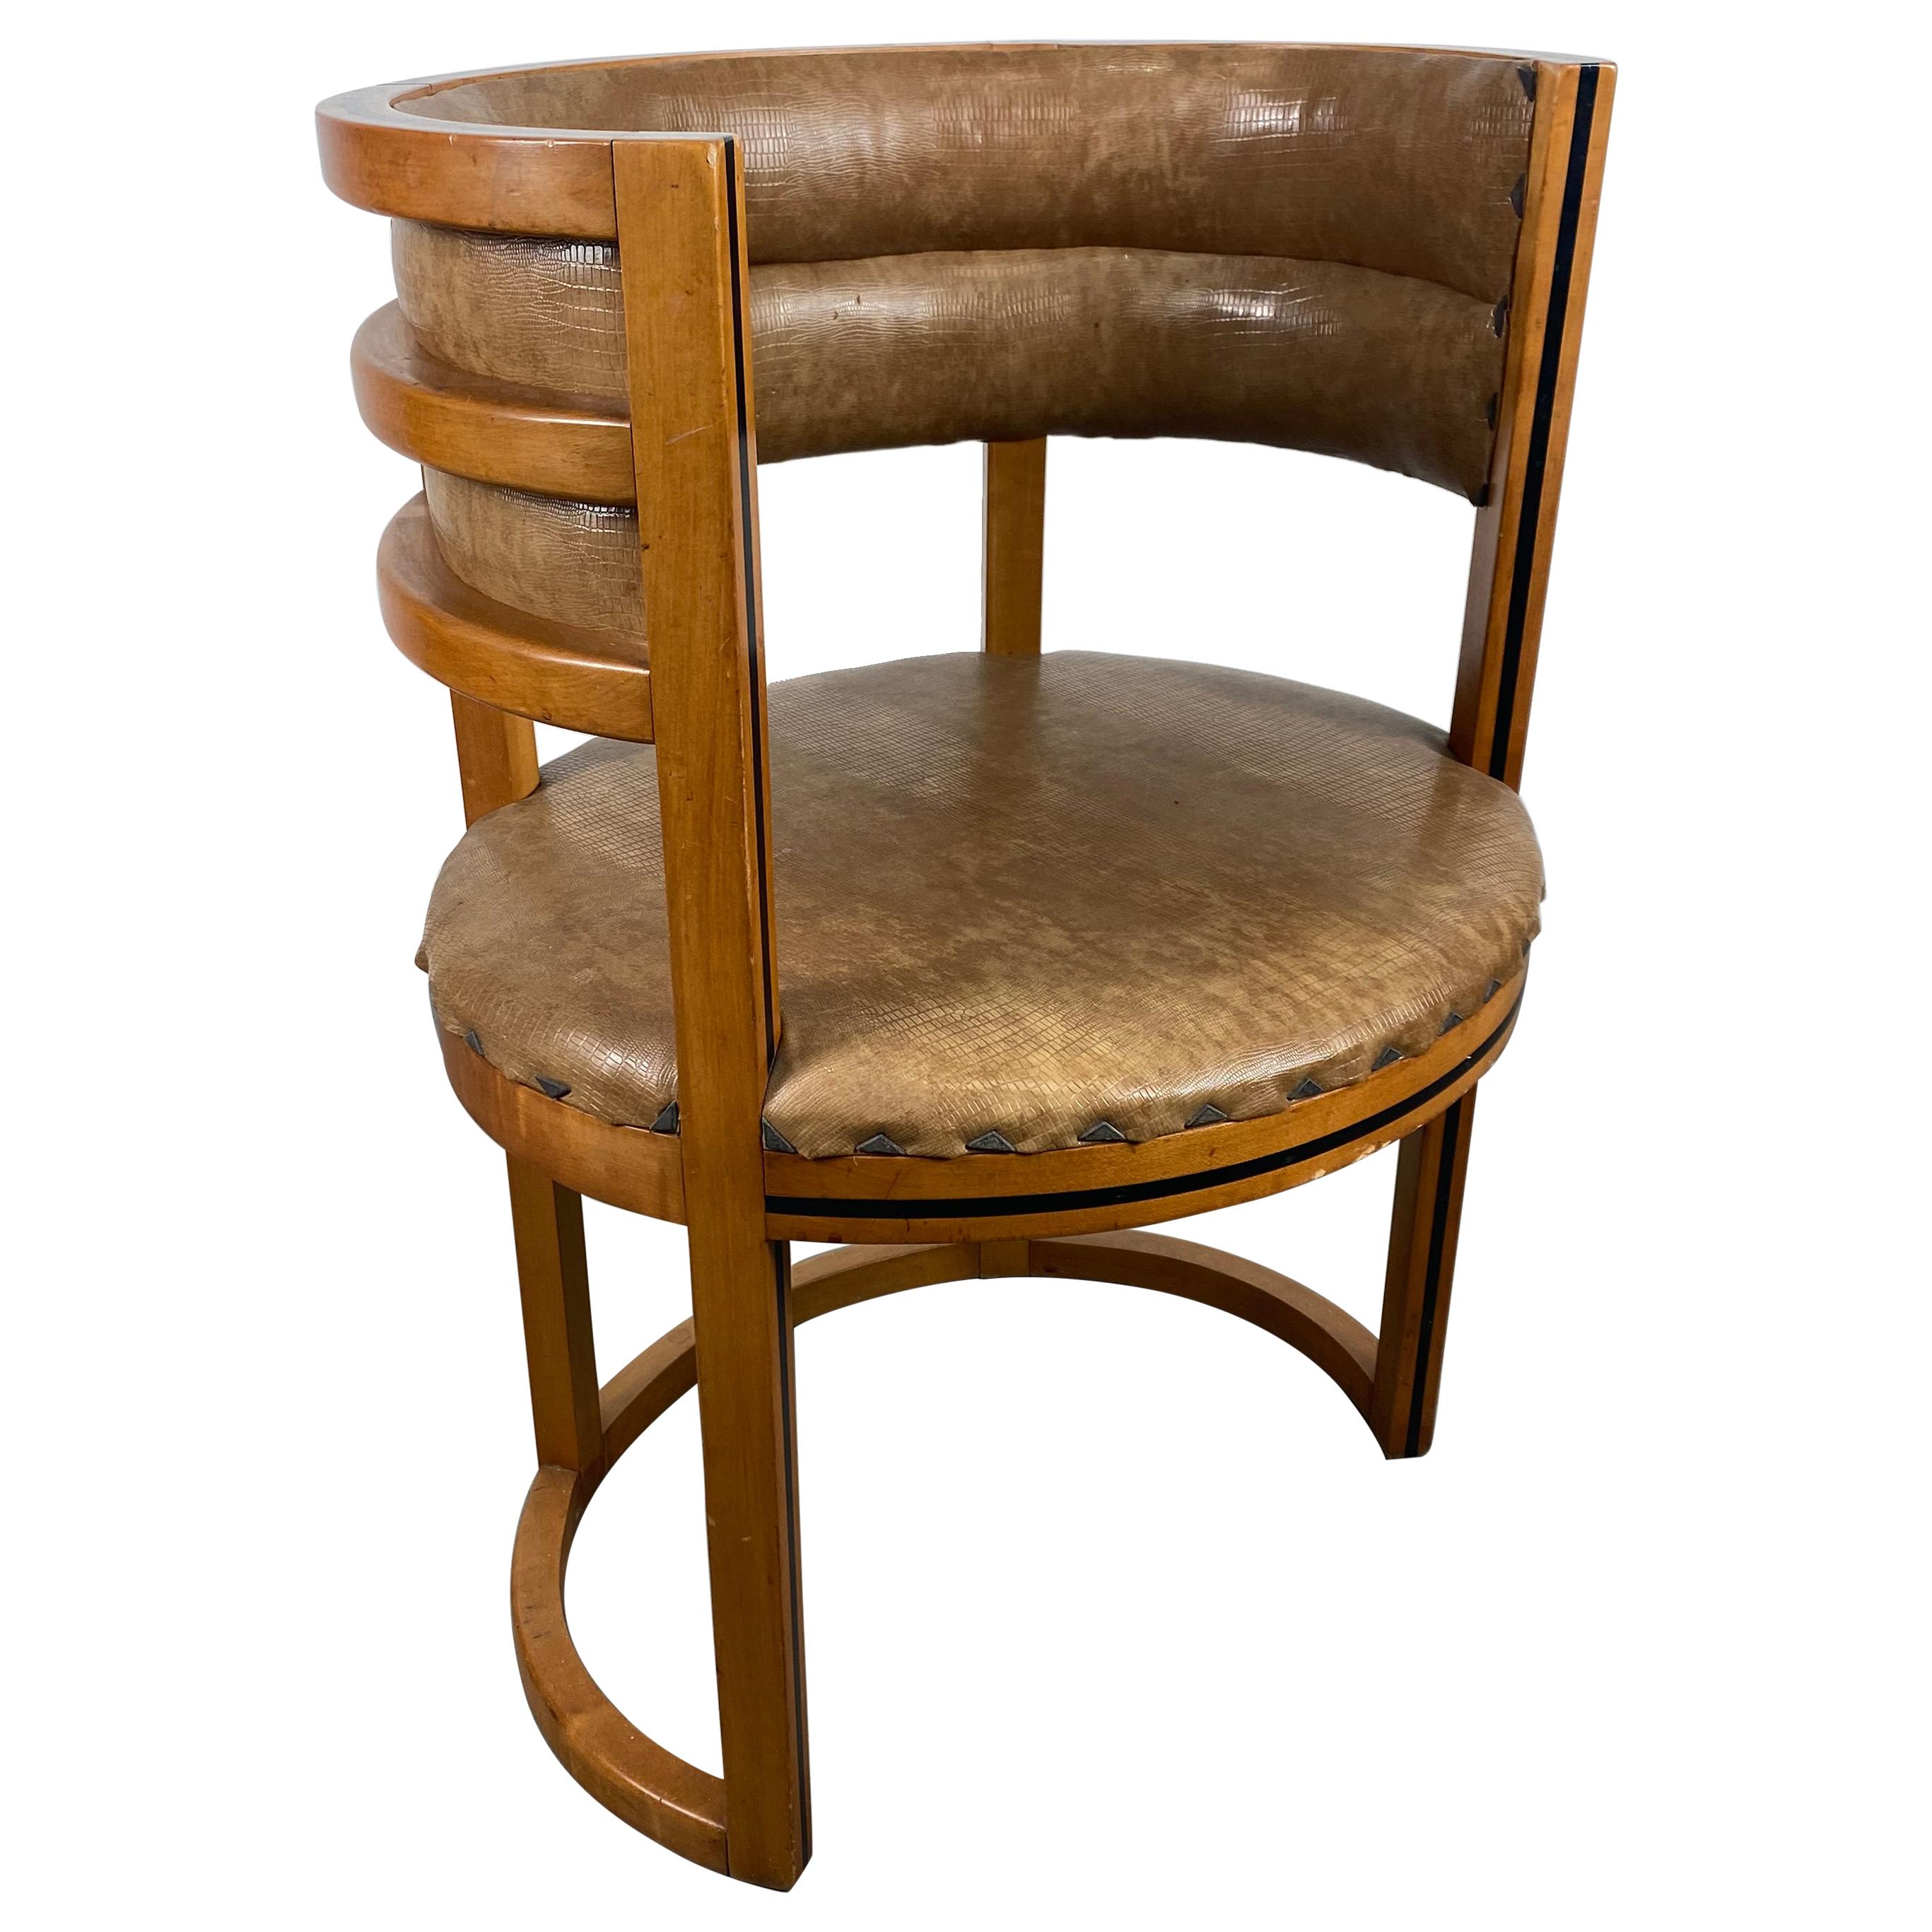 Unusual Art Deco, Bauhaus Accent / Desk Barrel Chair Manner of Josef Hoffmann